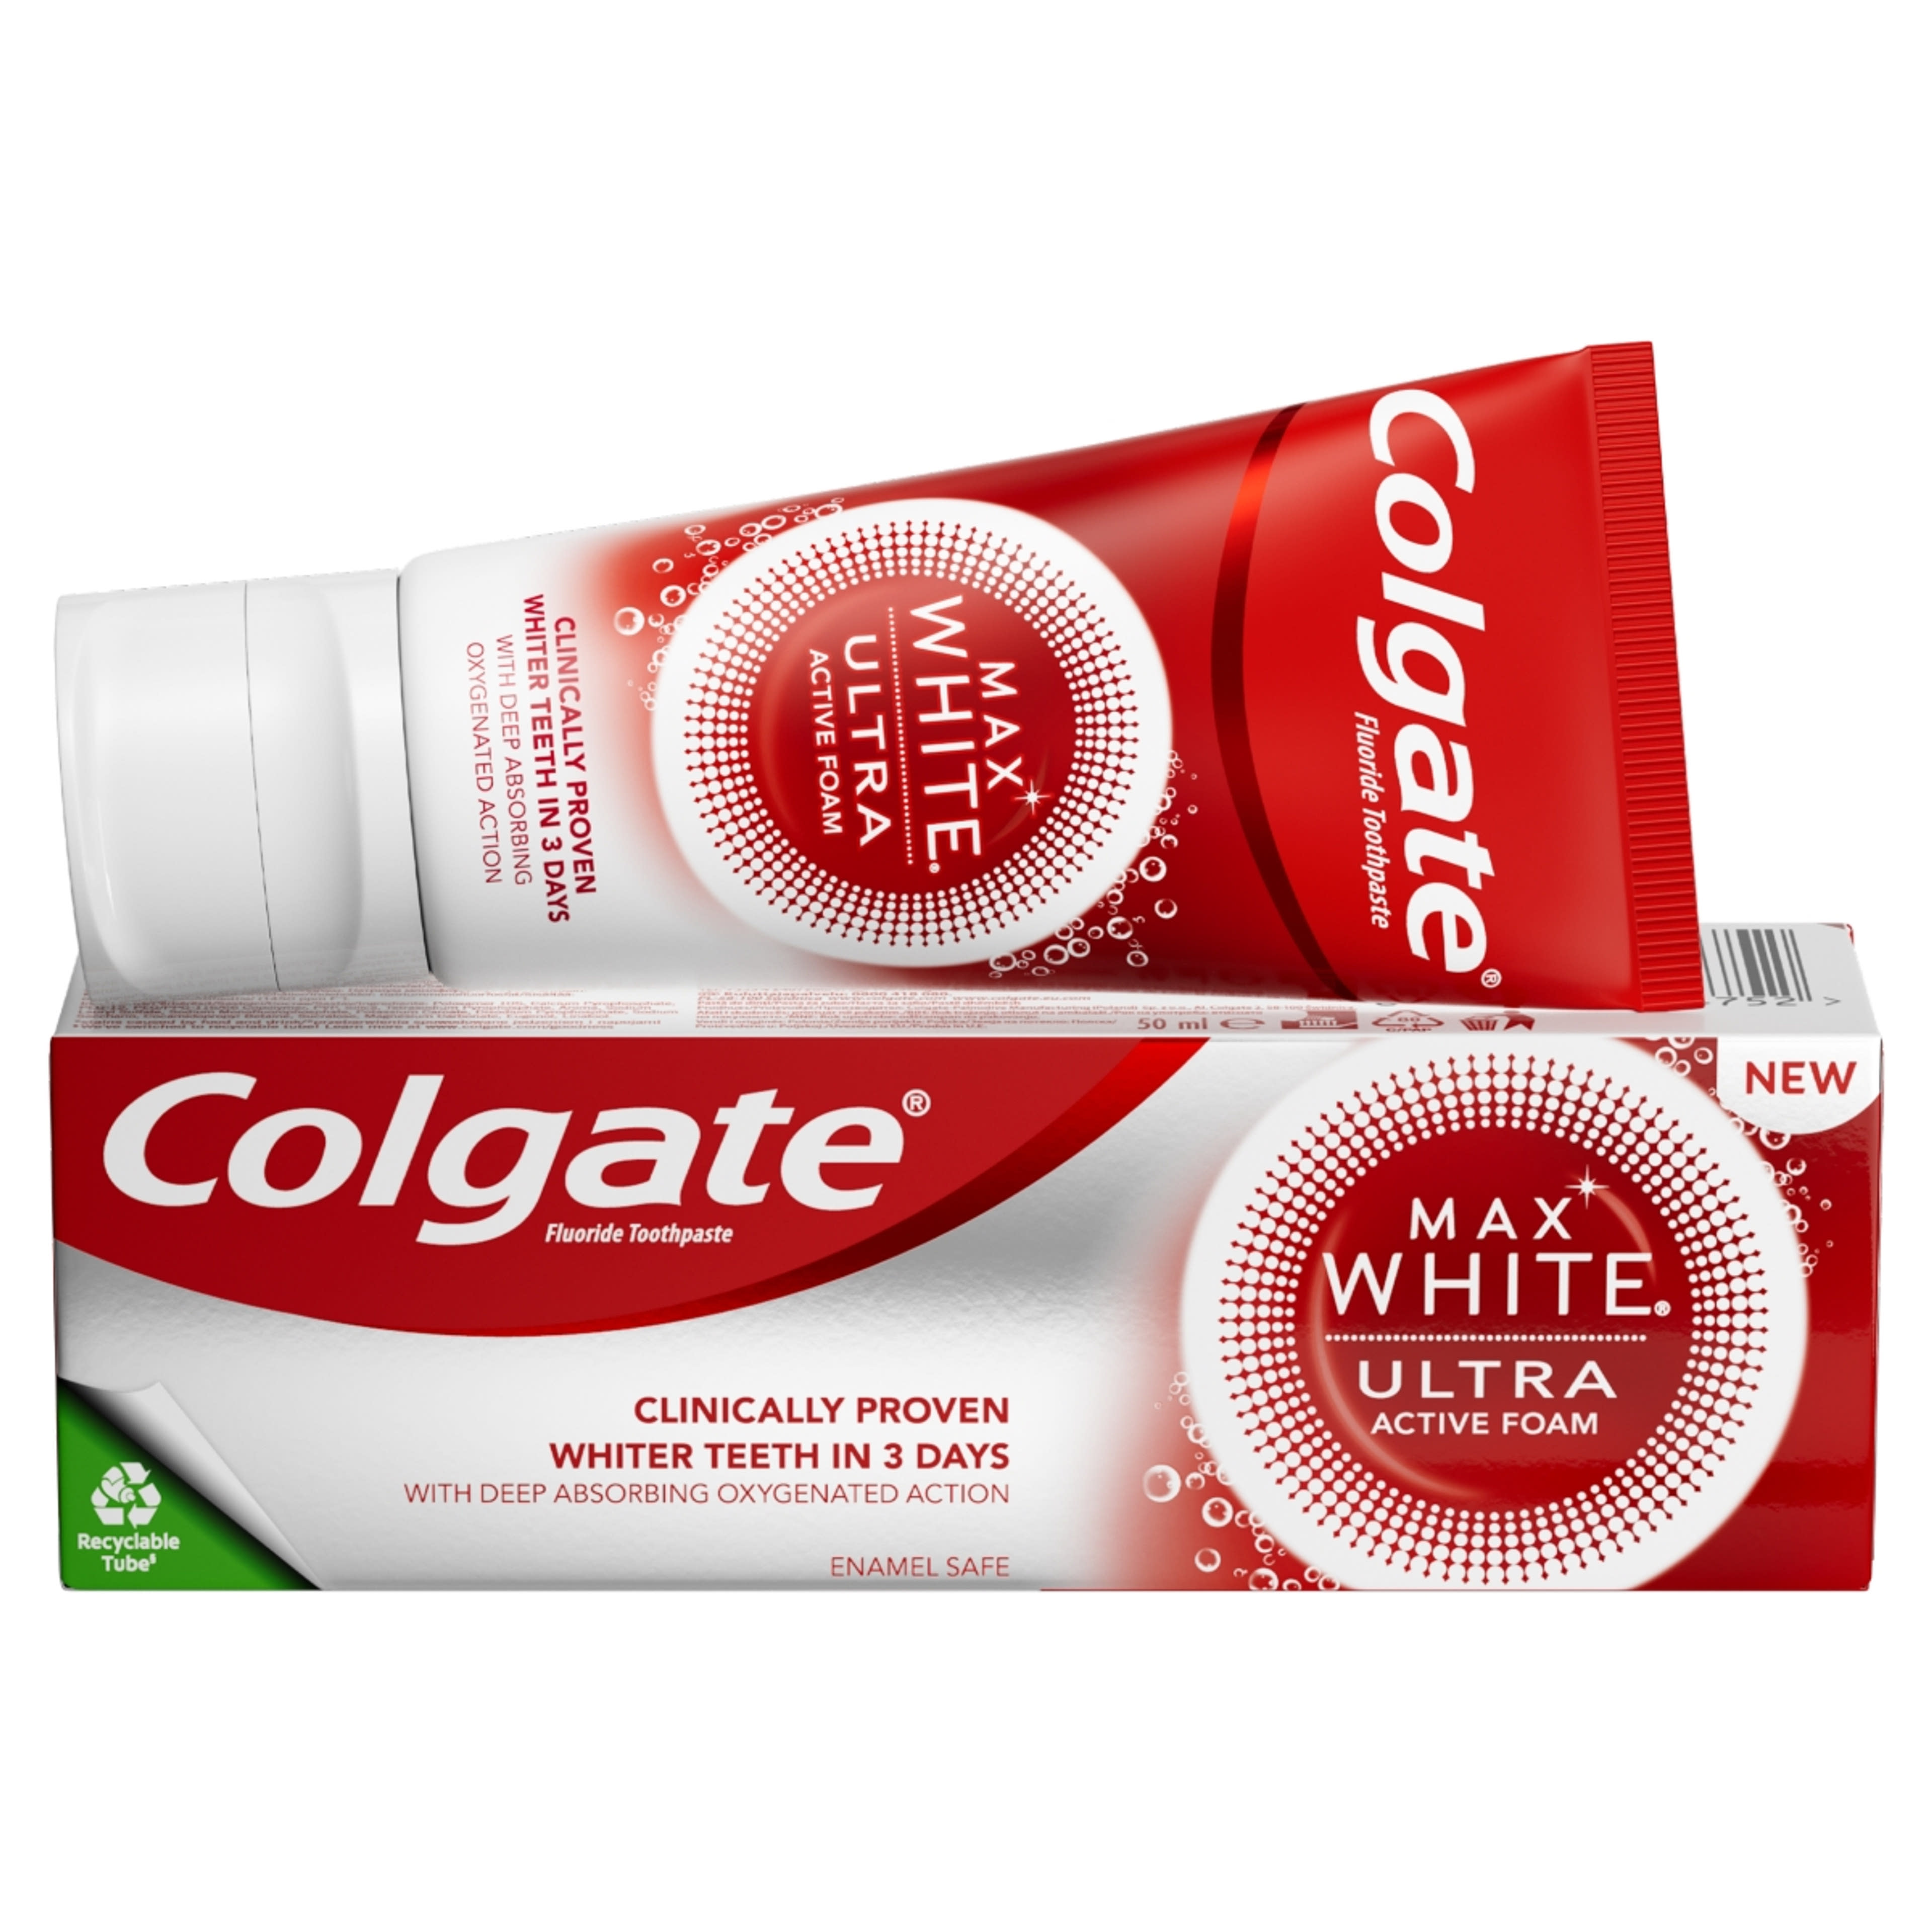 Colgate Max White Ultra Active Foam Whitening fogkrém - 50ml-2